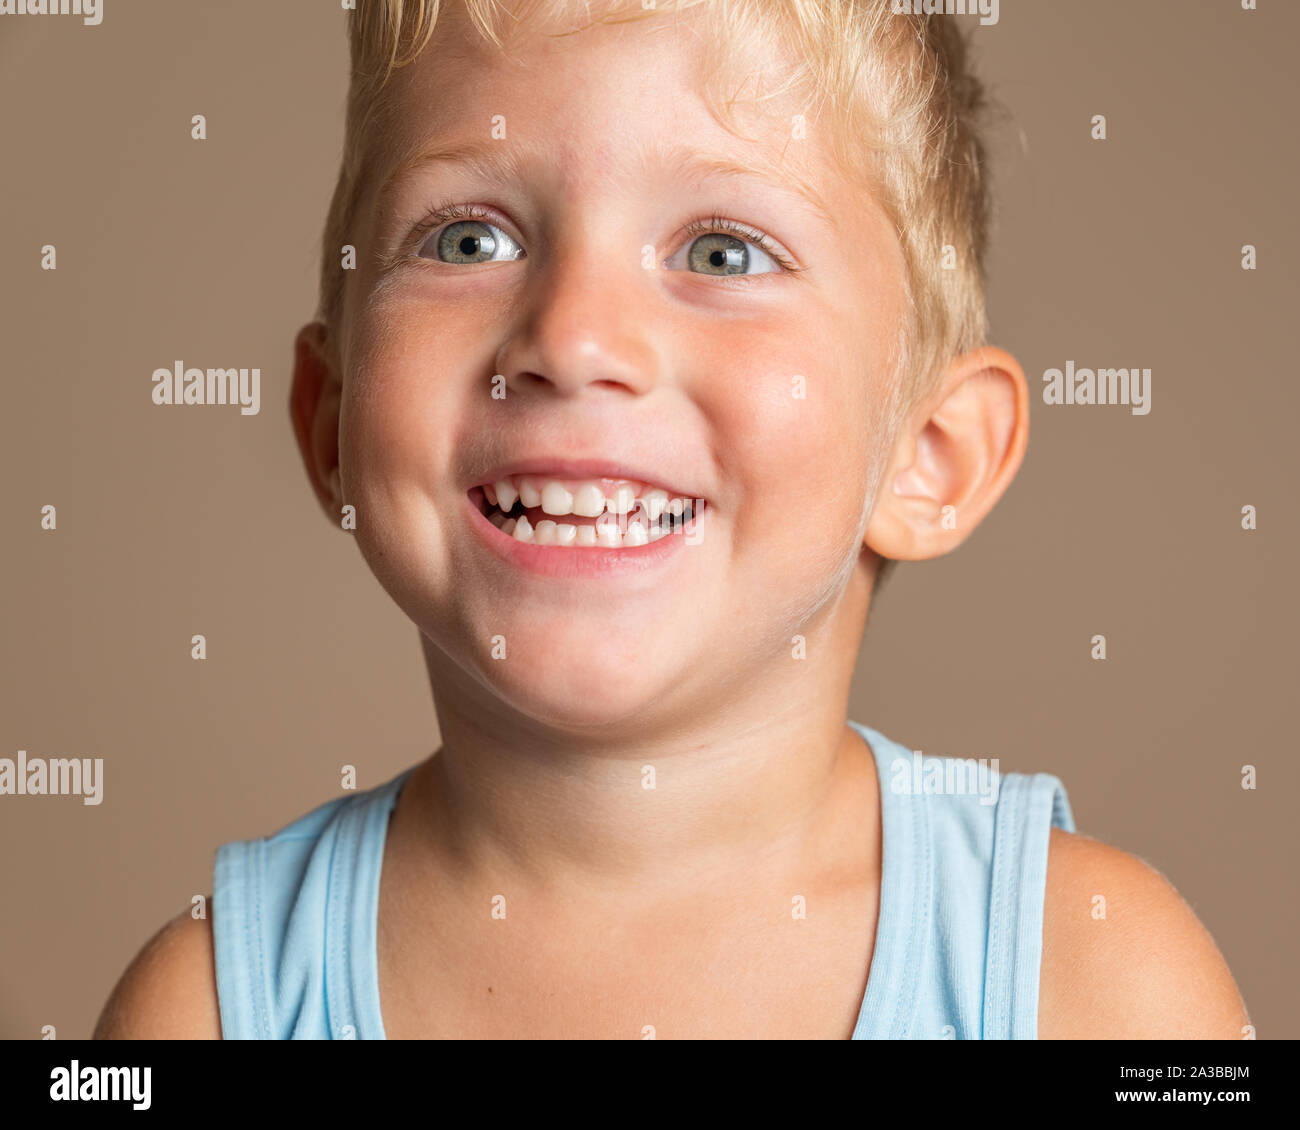 Gros plan du Baby Boy smiling trois ans, blonde aux yeux verts sur un fond brun clair, photo conceptuelle pour l'hygiène dentaire et les soins personnels. Banque D'Images